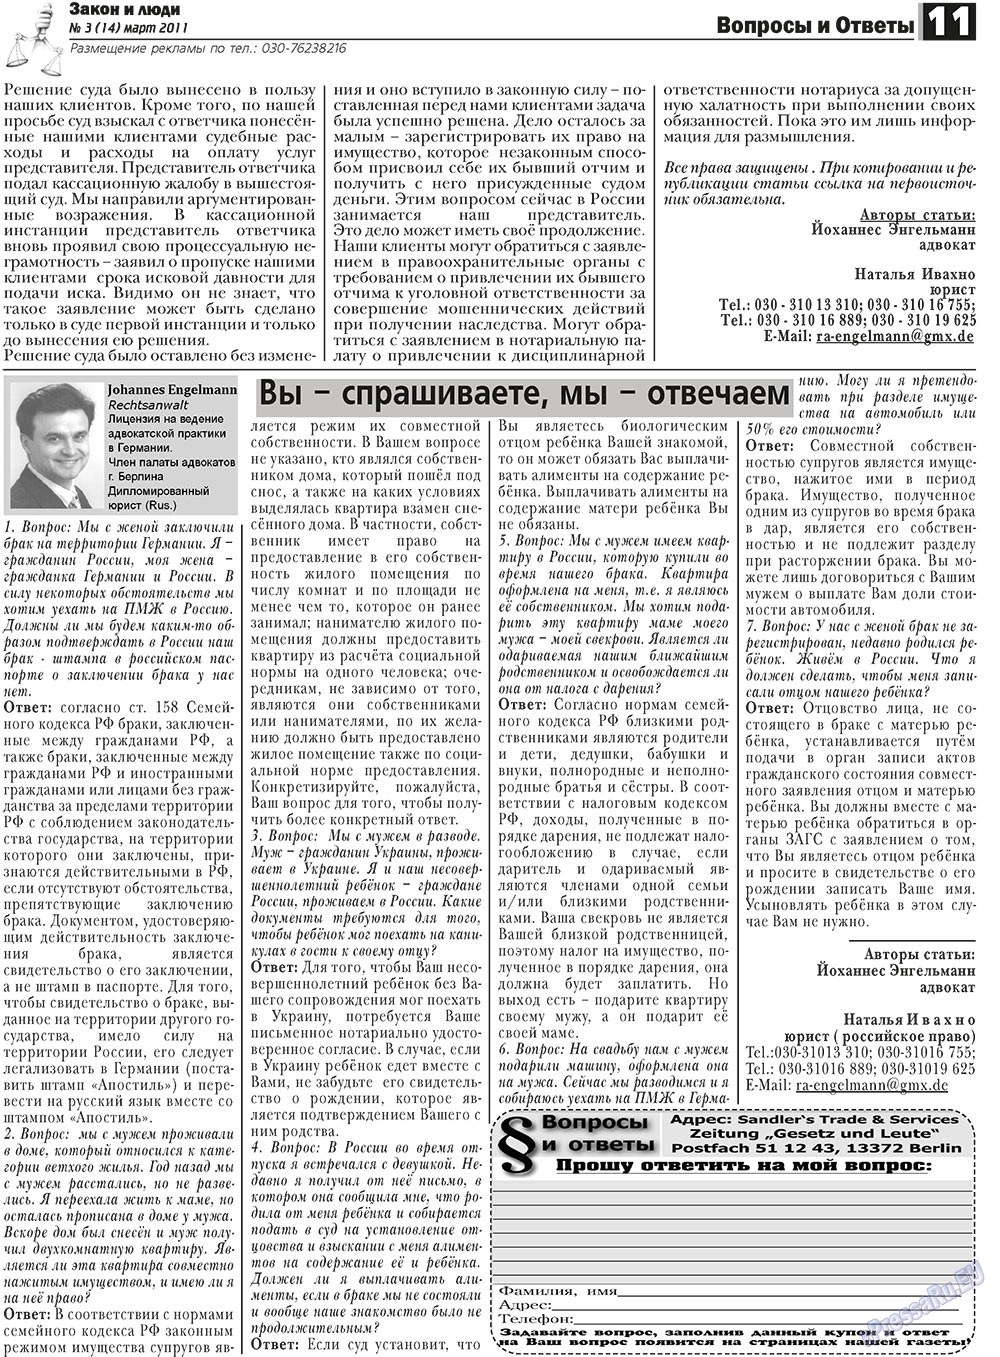 Закон и люди, газета. 2011 №3 стр.11